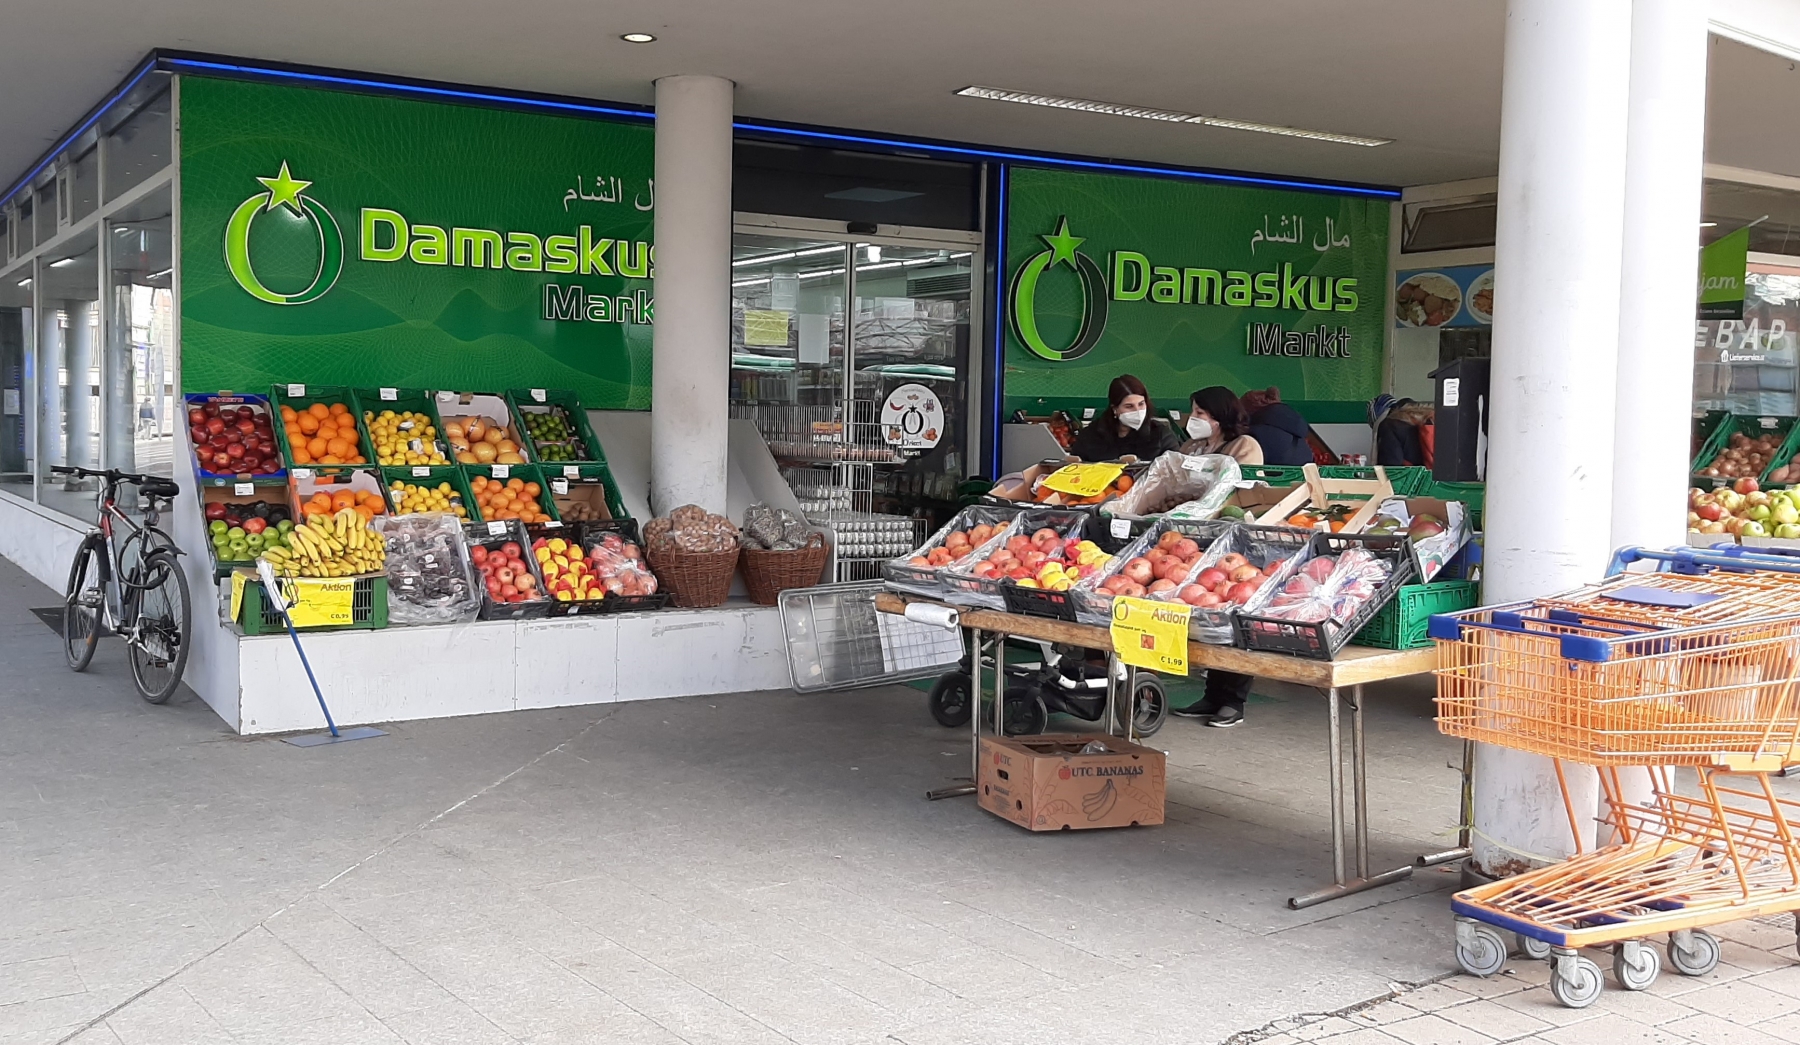 Vor dem Eingang des Damaskus Markt am Lendplatz sind Schachteln mit Obst und Gemüse aufgestellt.